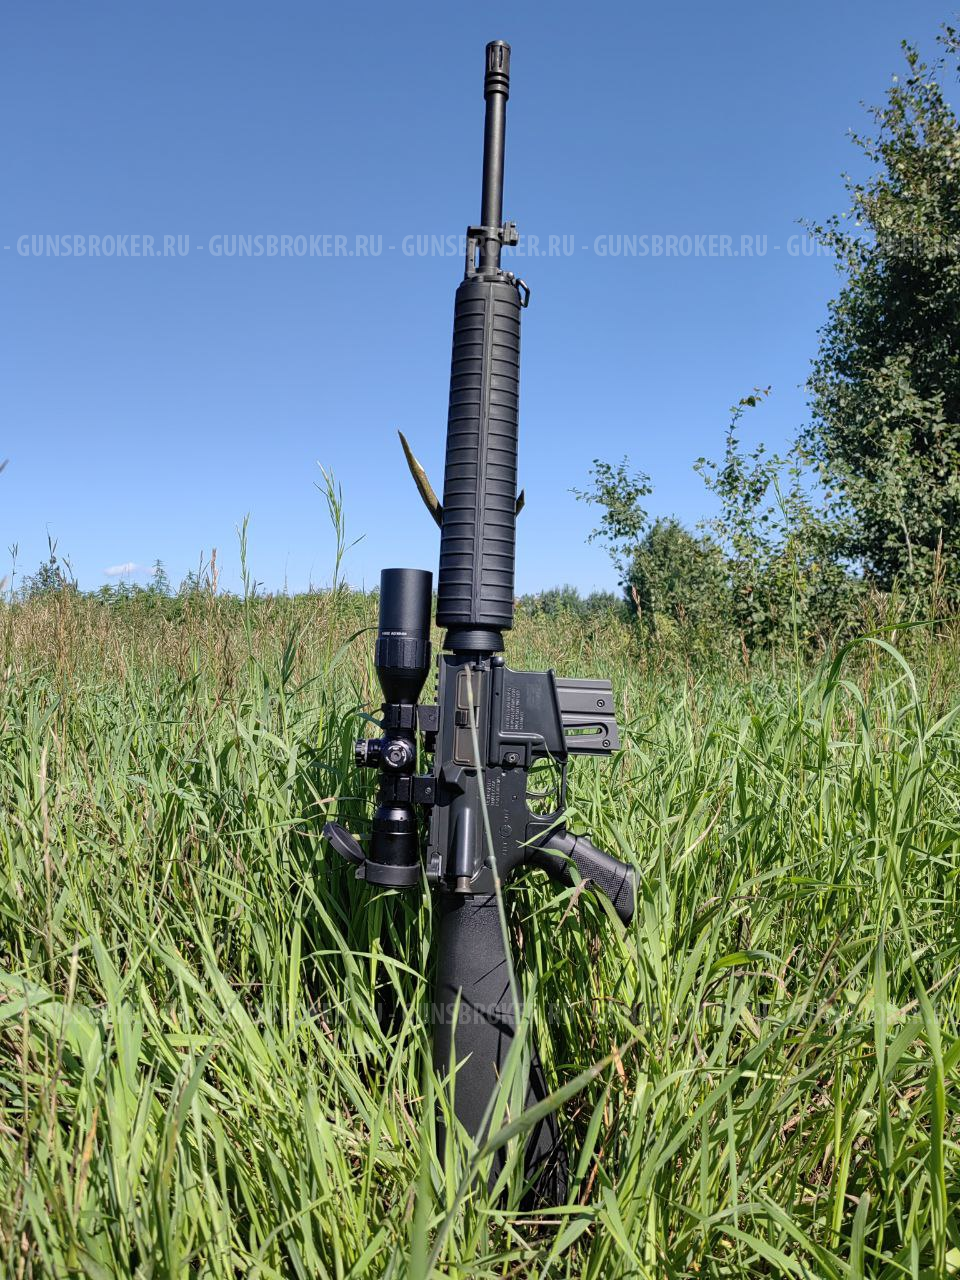 ТОЗ-99 карабин Walther Colt M16 Rifle 22 LR